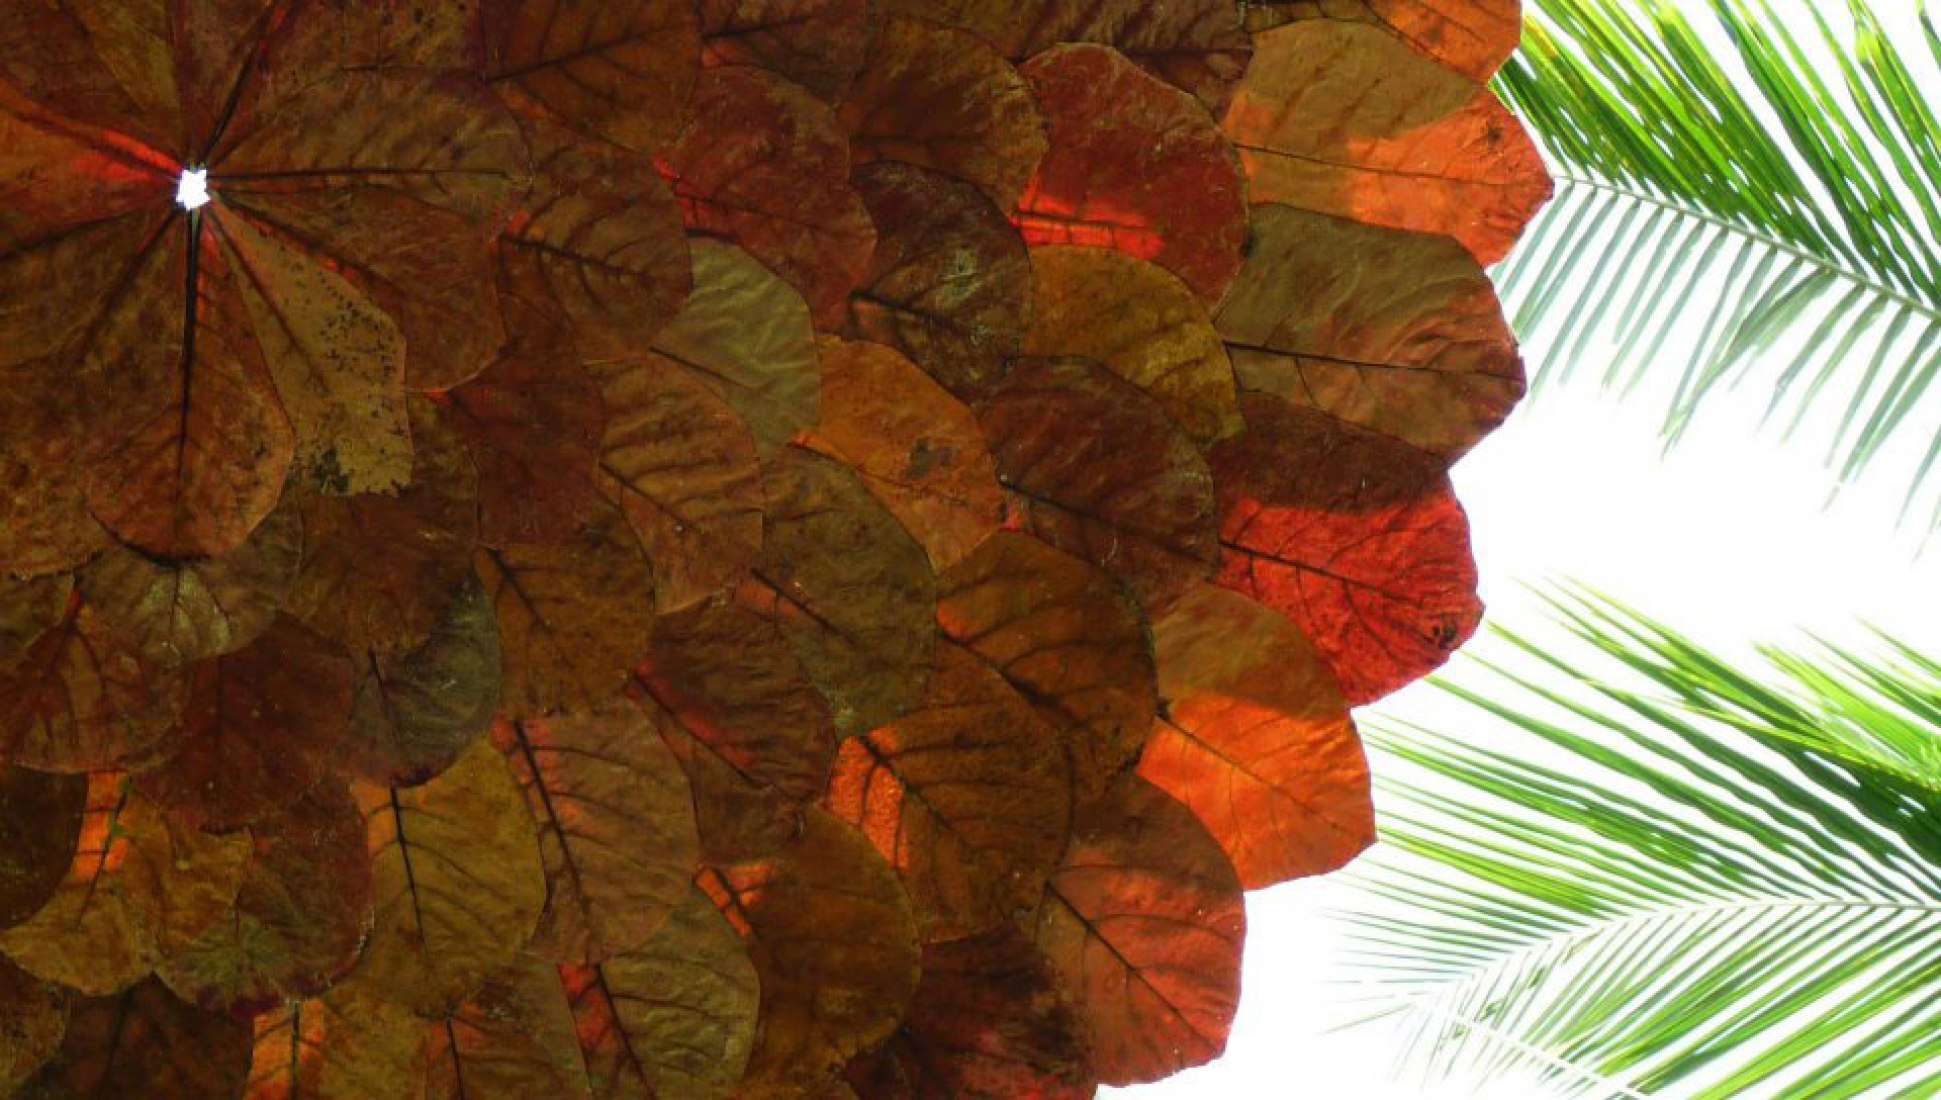 Amêndoa, suspended leaves. Photography installation. Courtesy of Iván Juárez.